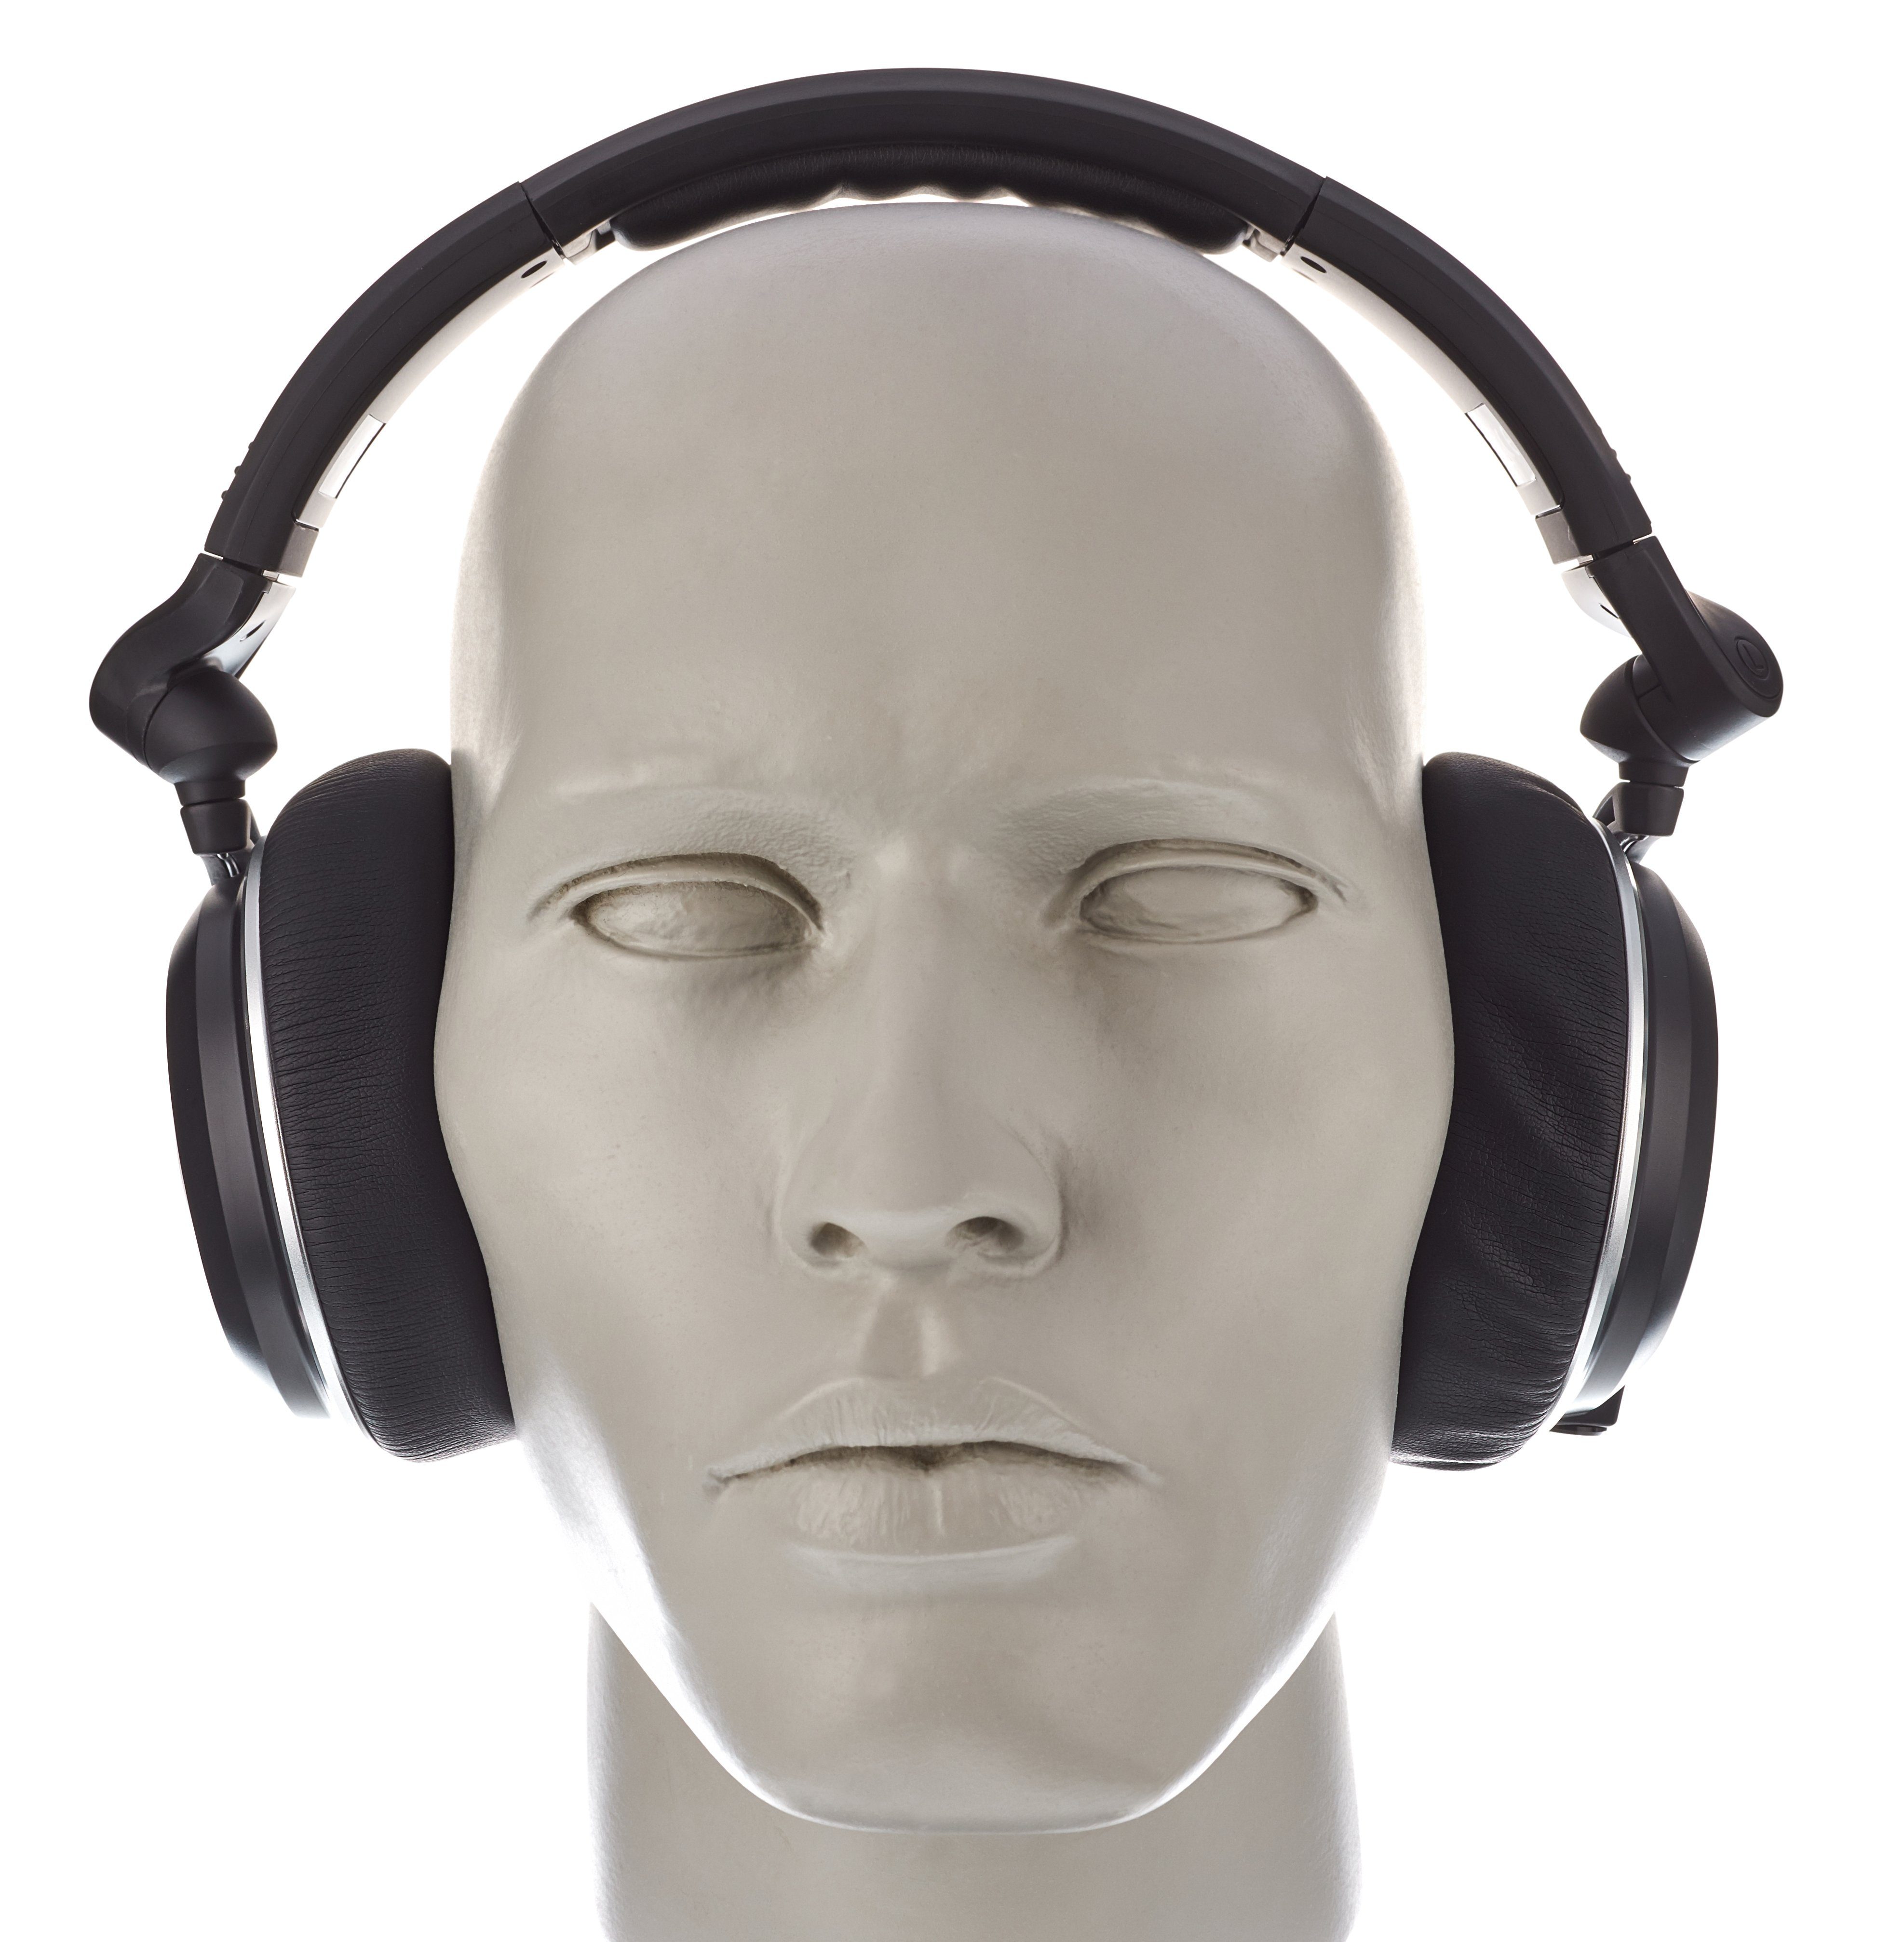 AKG K182 Review | headphonecheck.com